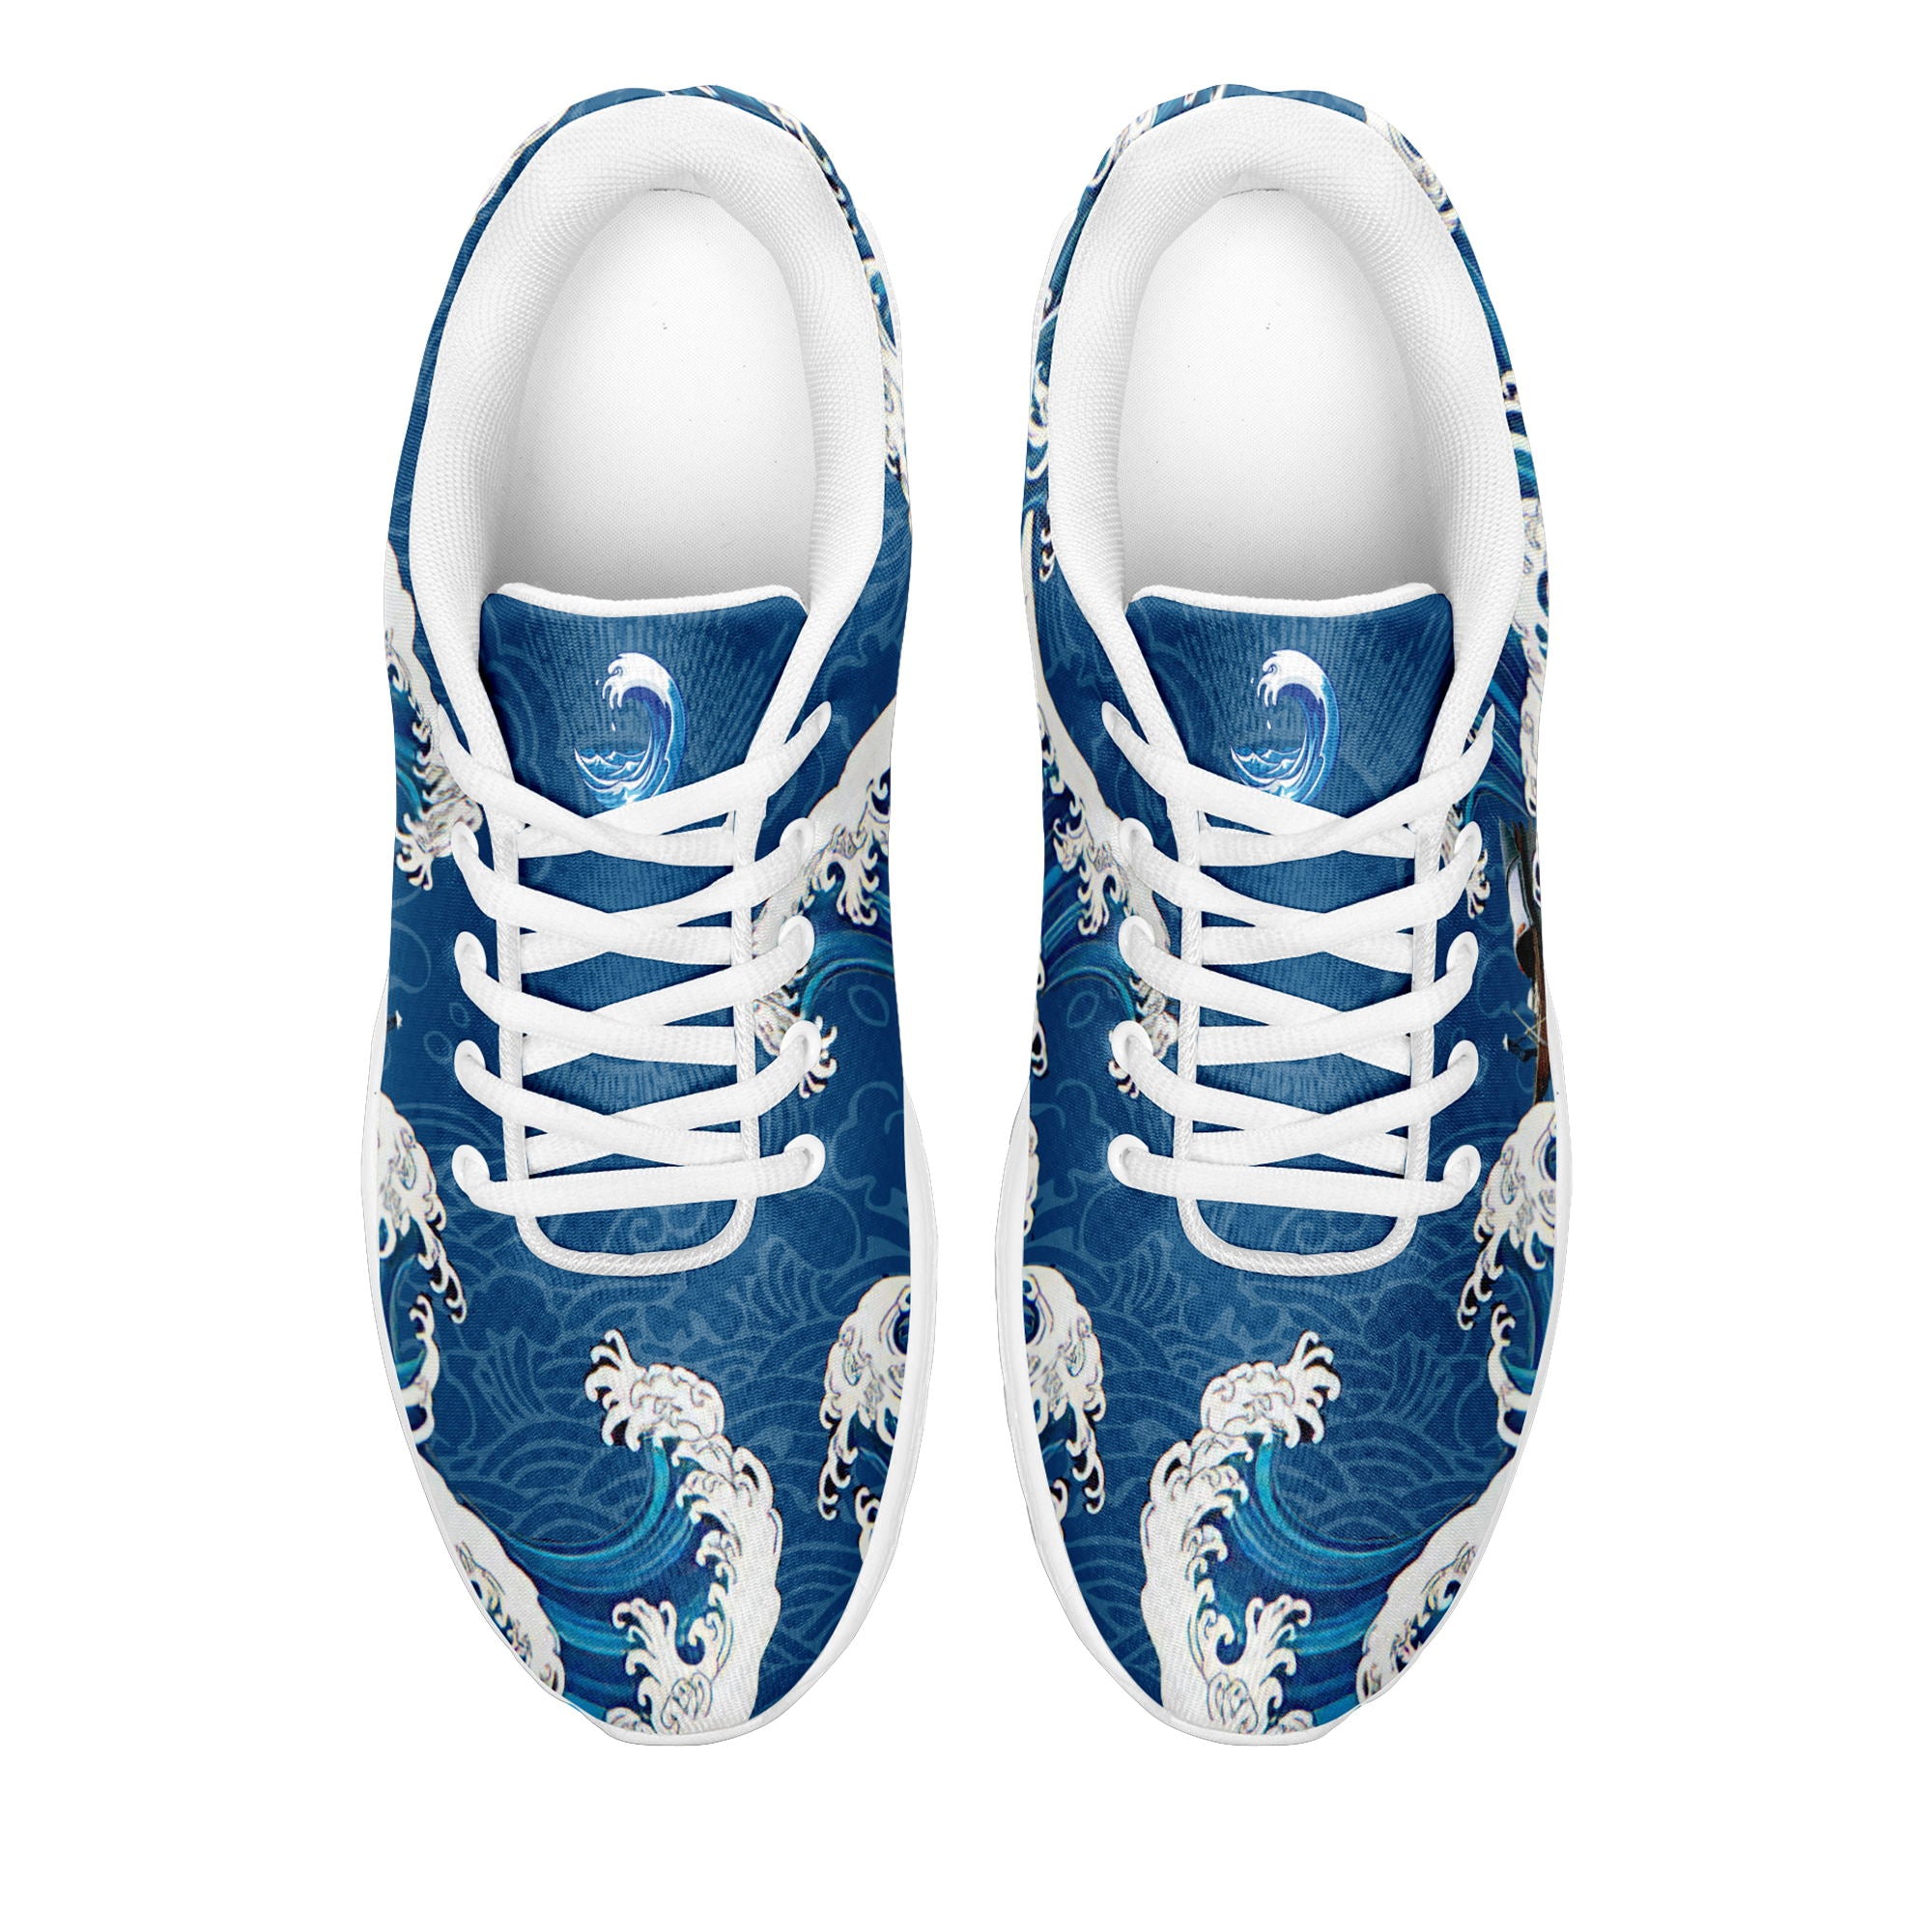 柔性定制个性化打印设计跑鞋时尚中国莆田妈祖特色主题运动鞋蓝色BLD2-5